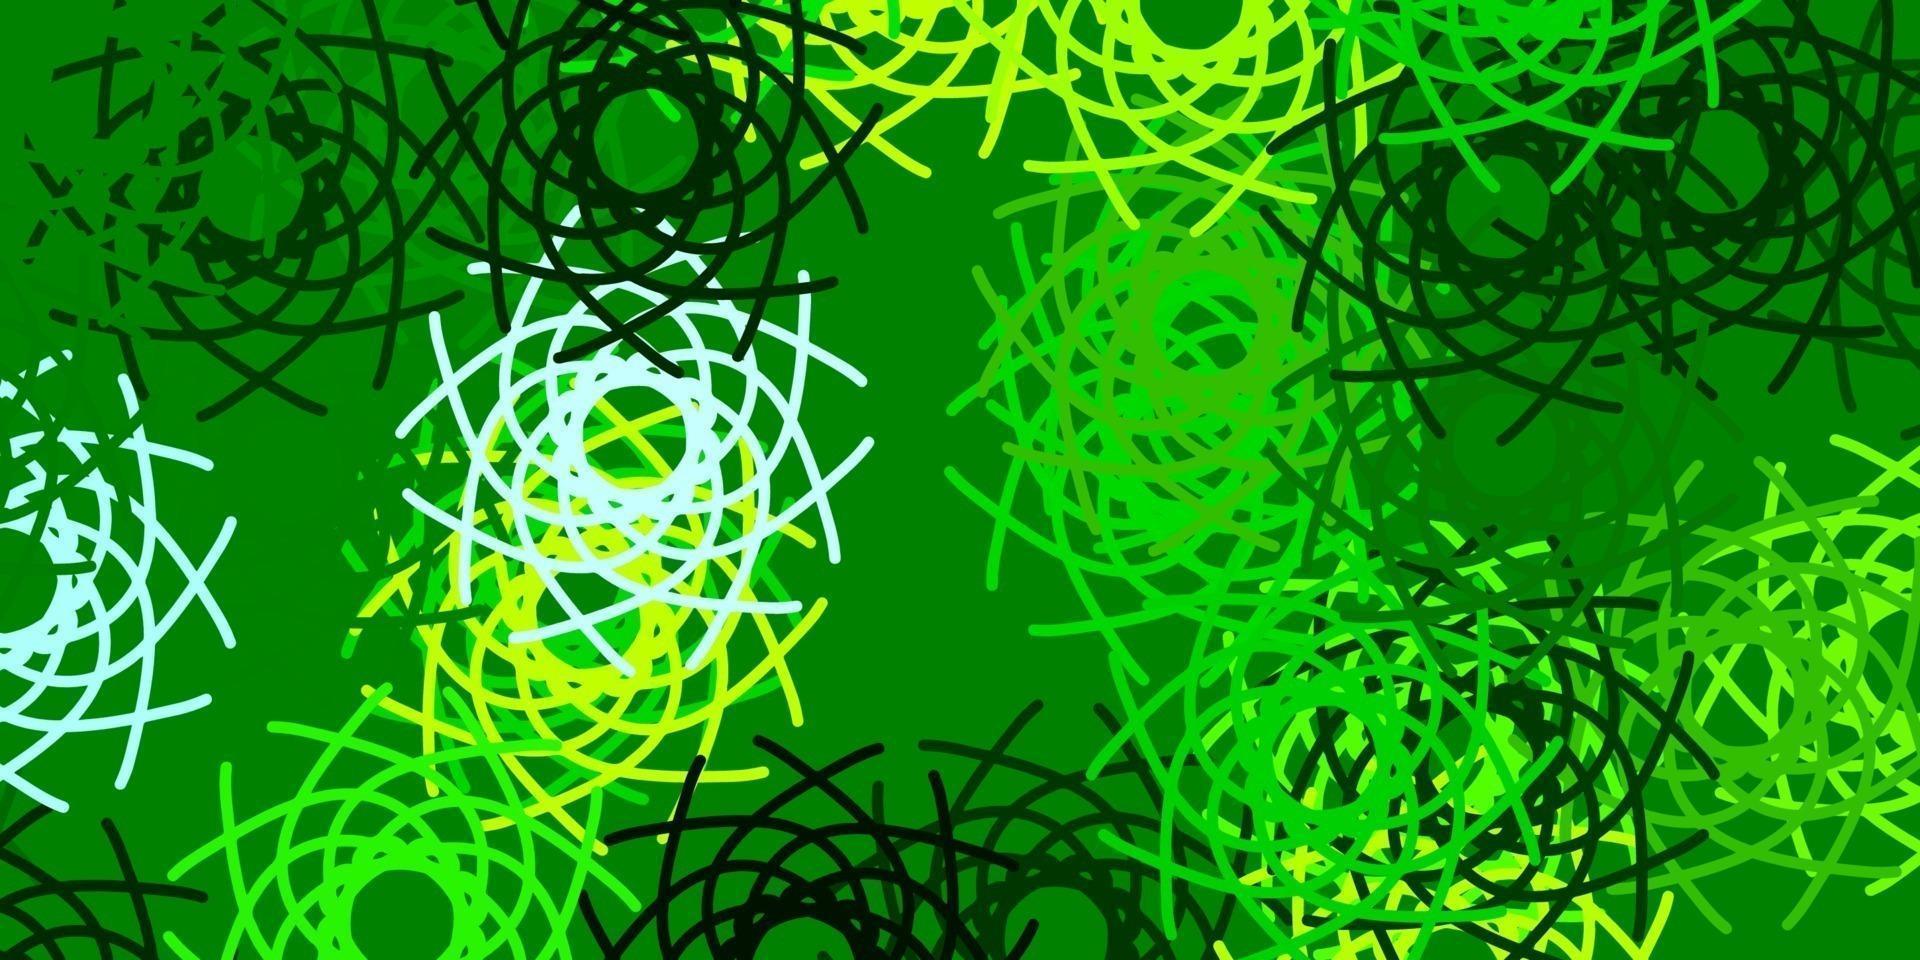 ljusgrön, gul vektorstruktur med memphis-former. vektor